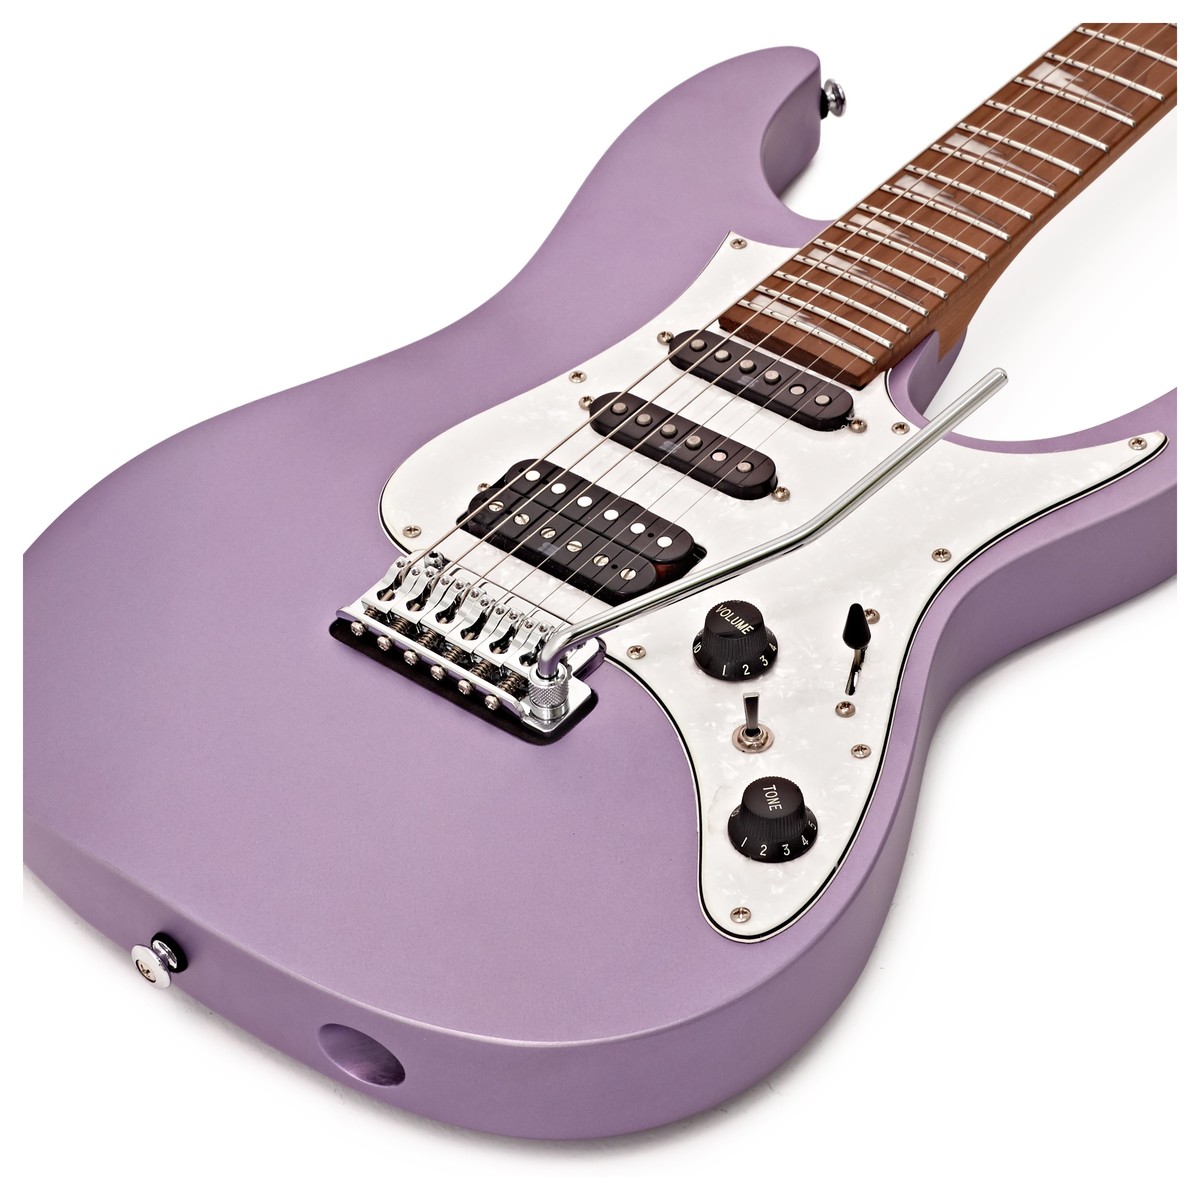 Ibanez Mario Camarena Mar10 Lmm Premium Signature Hss Trem Mn +housse - Lavender Metallic Matte - Guitare Électrique Forme Str - Variation 3